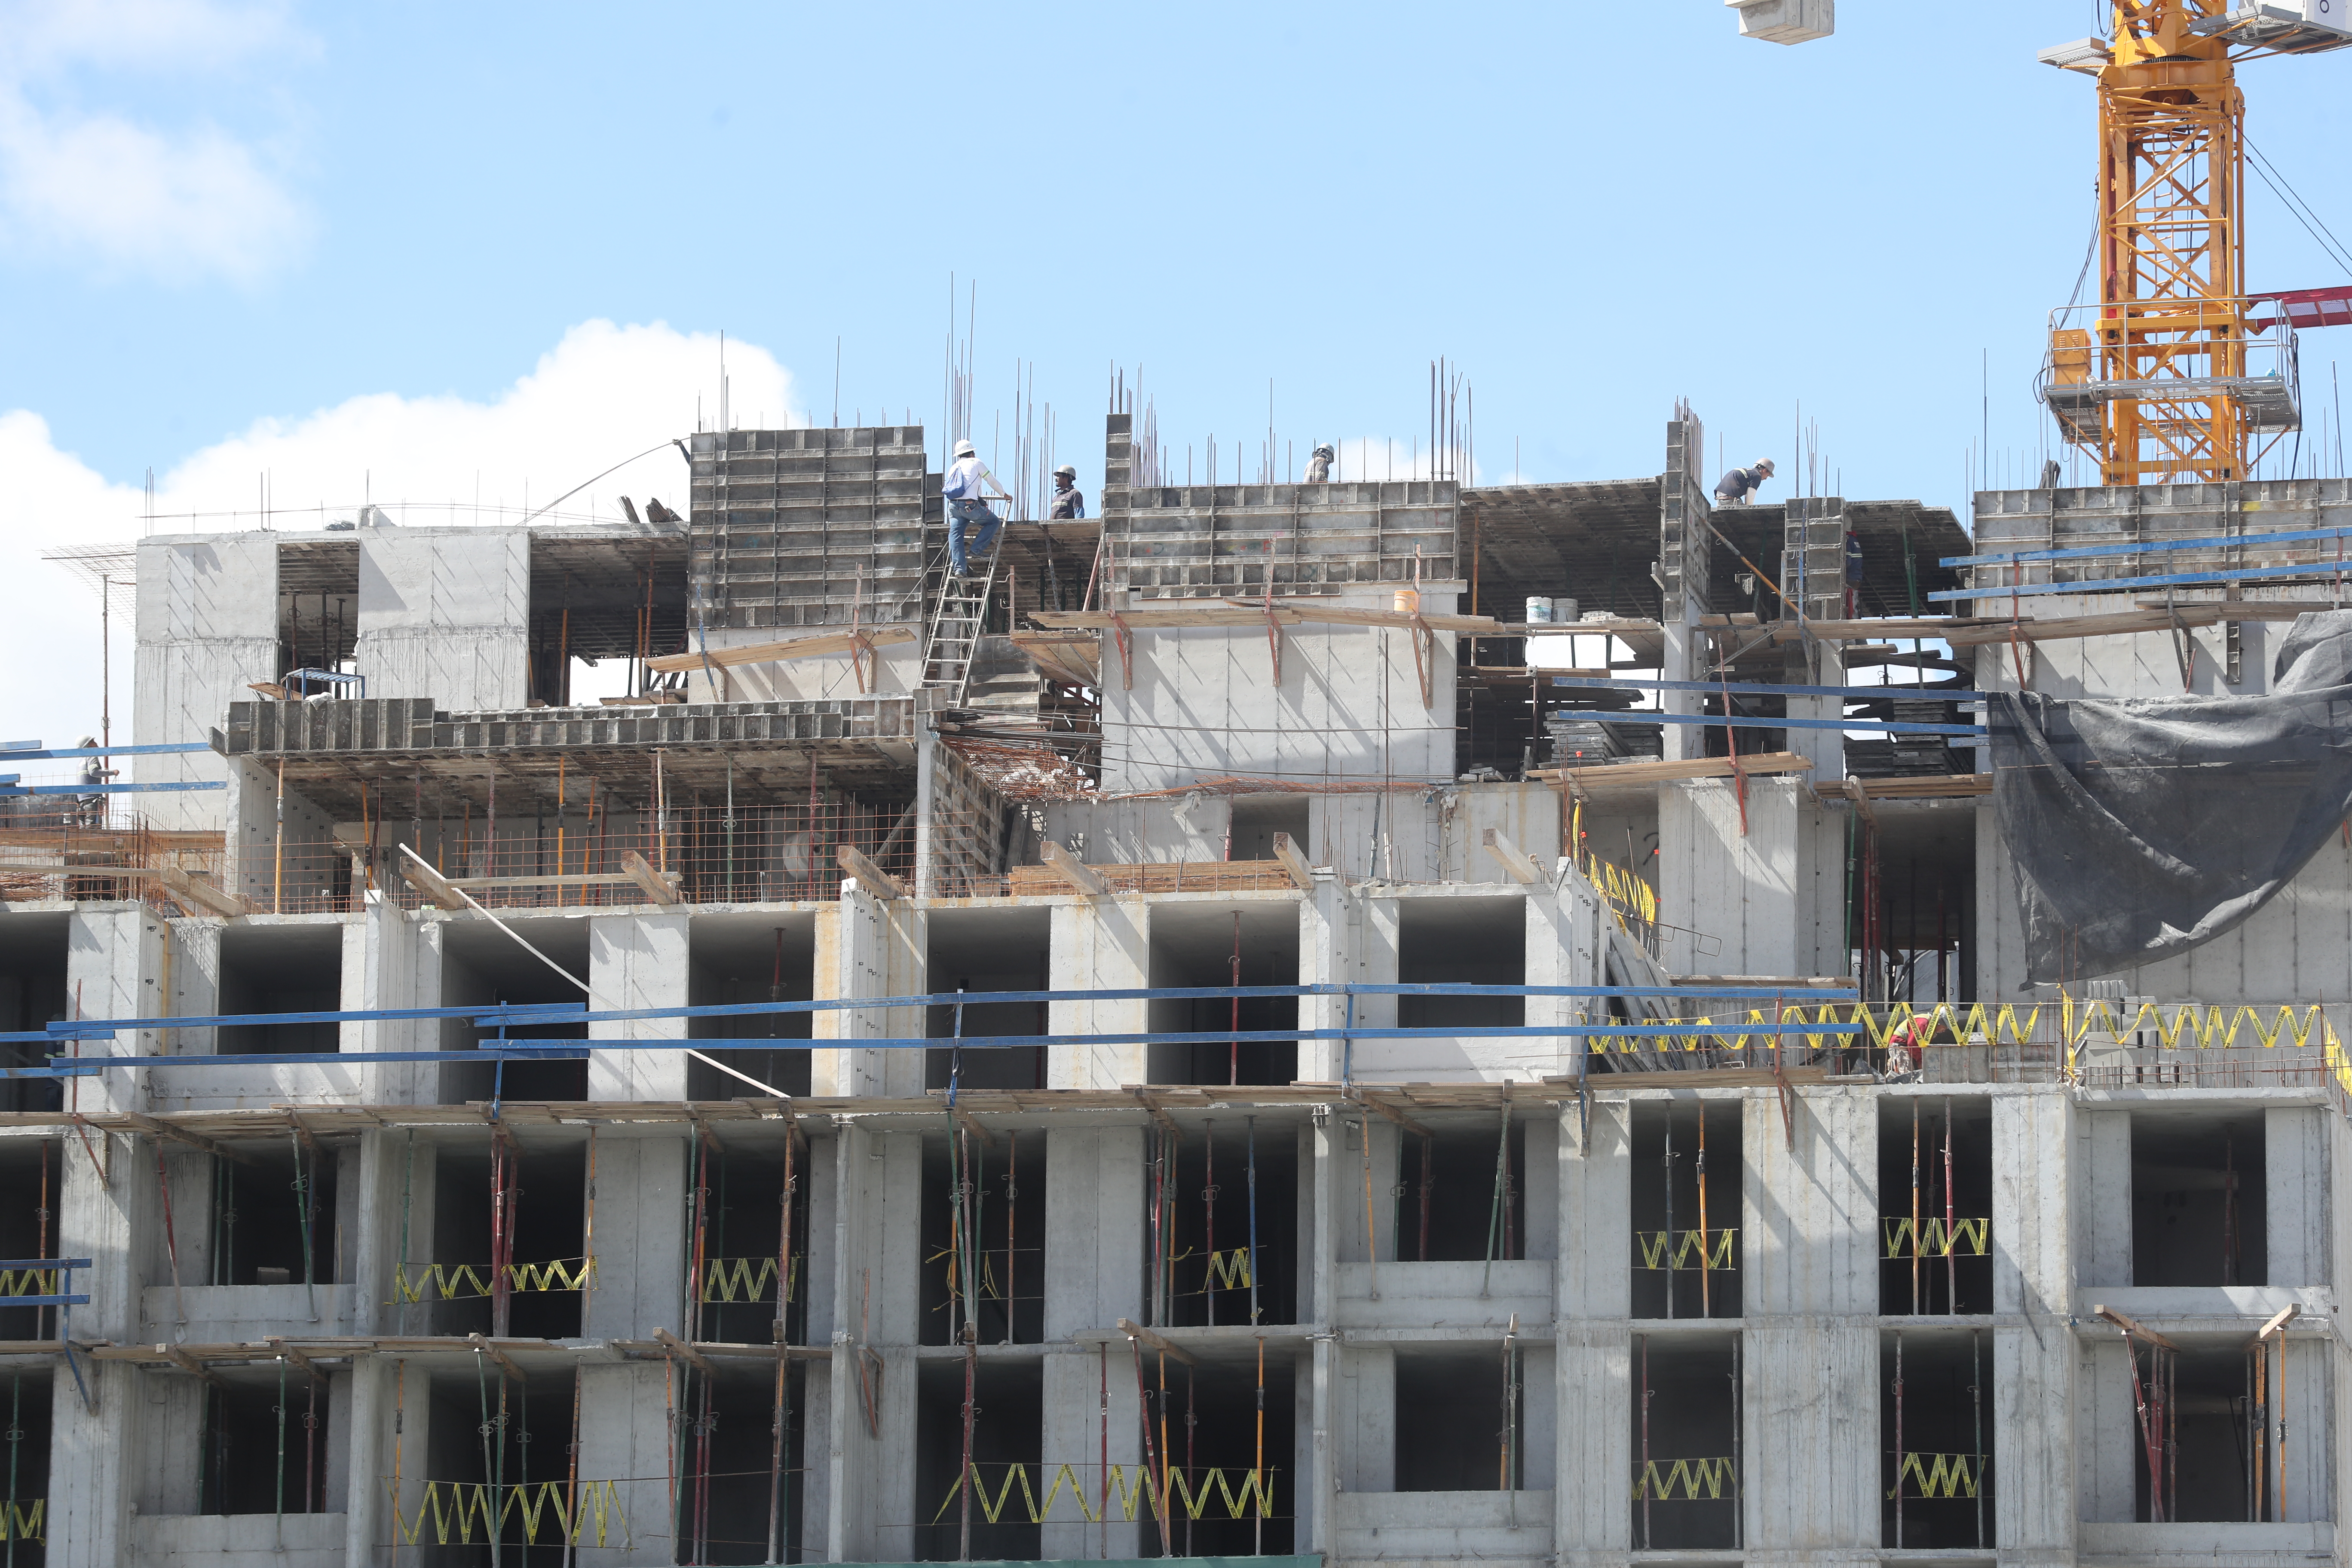 La cartera de créditos para el sector construcción de vivienda podría crecer a 10% según los pronósticos del sector bancario. (Foto Prensa Libre: Hemeroteca) 